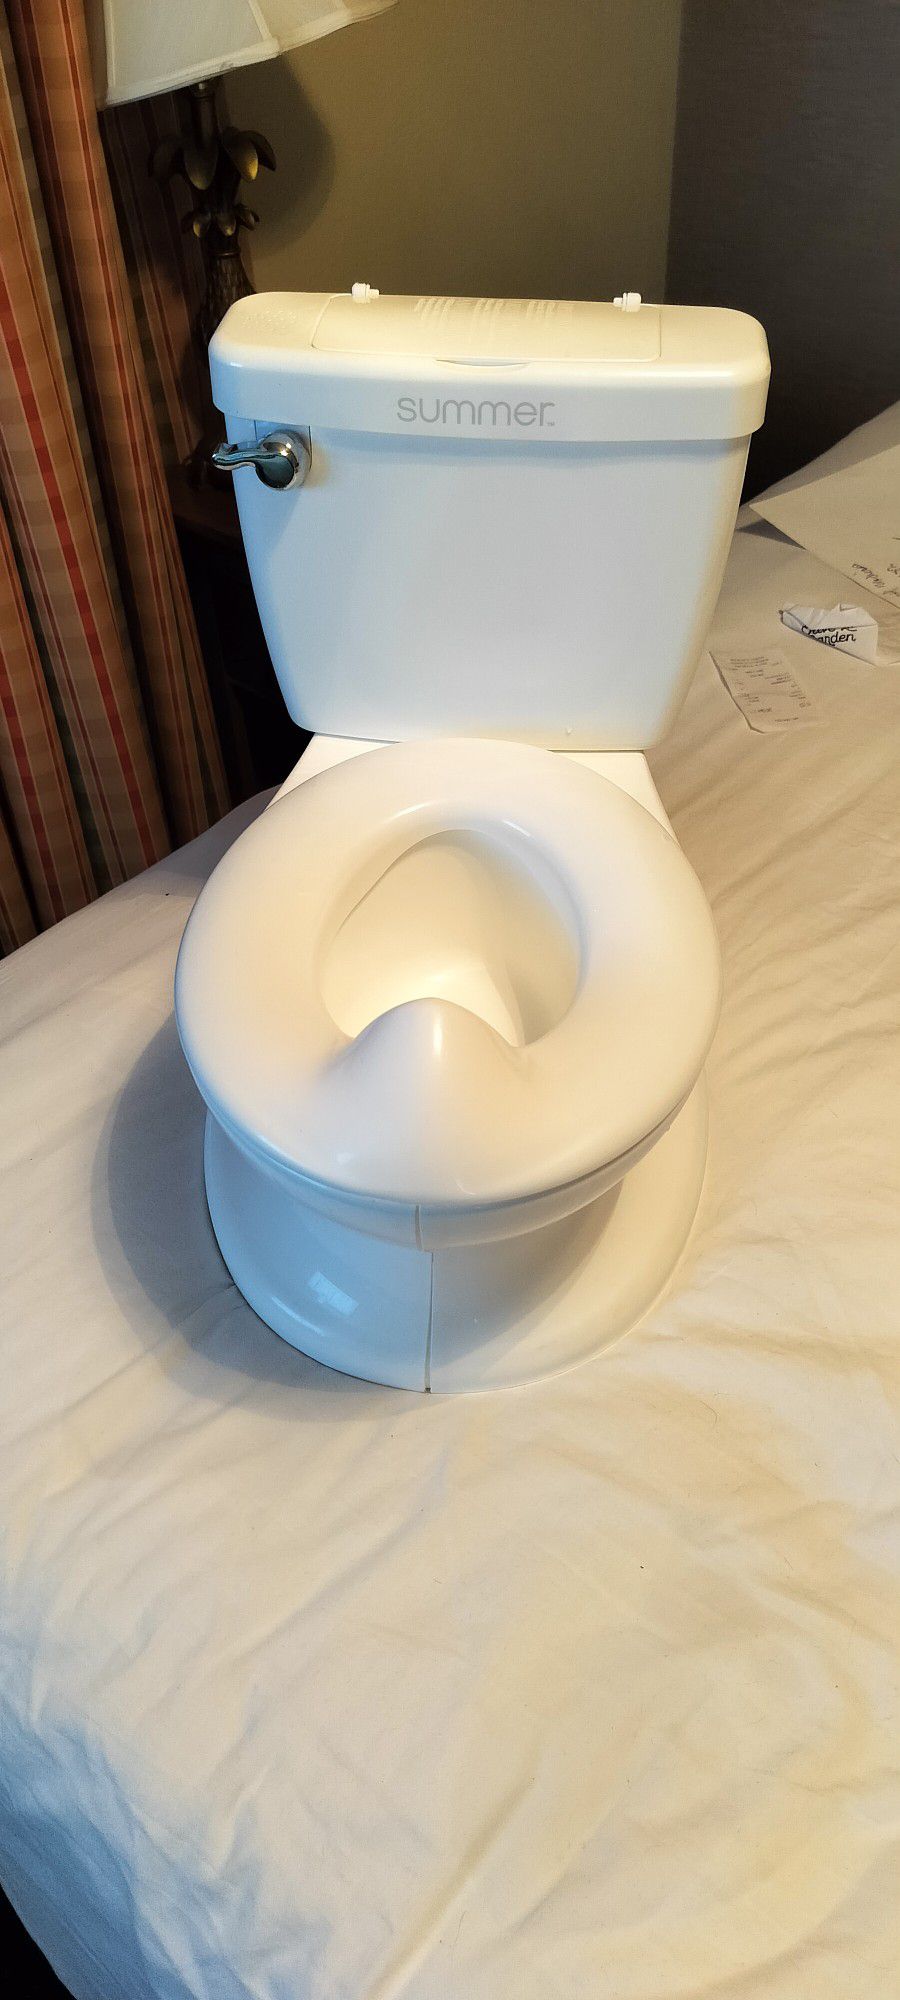 S U M M E R All White Plastic Toilet Seat Children